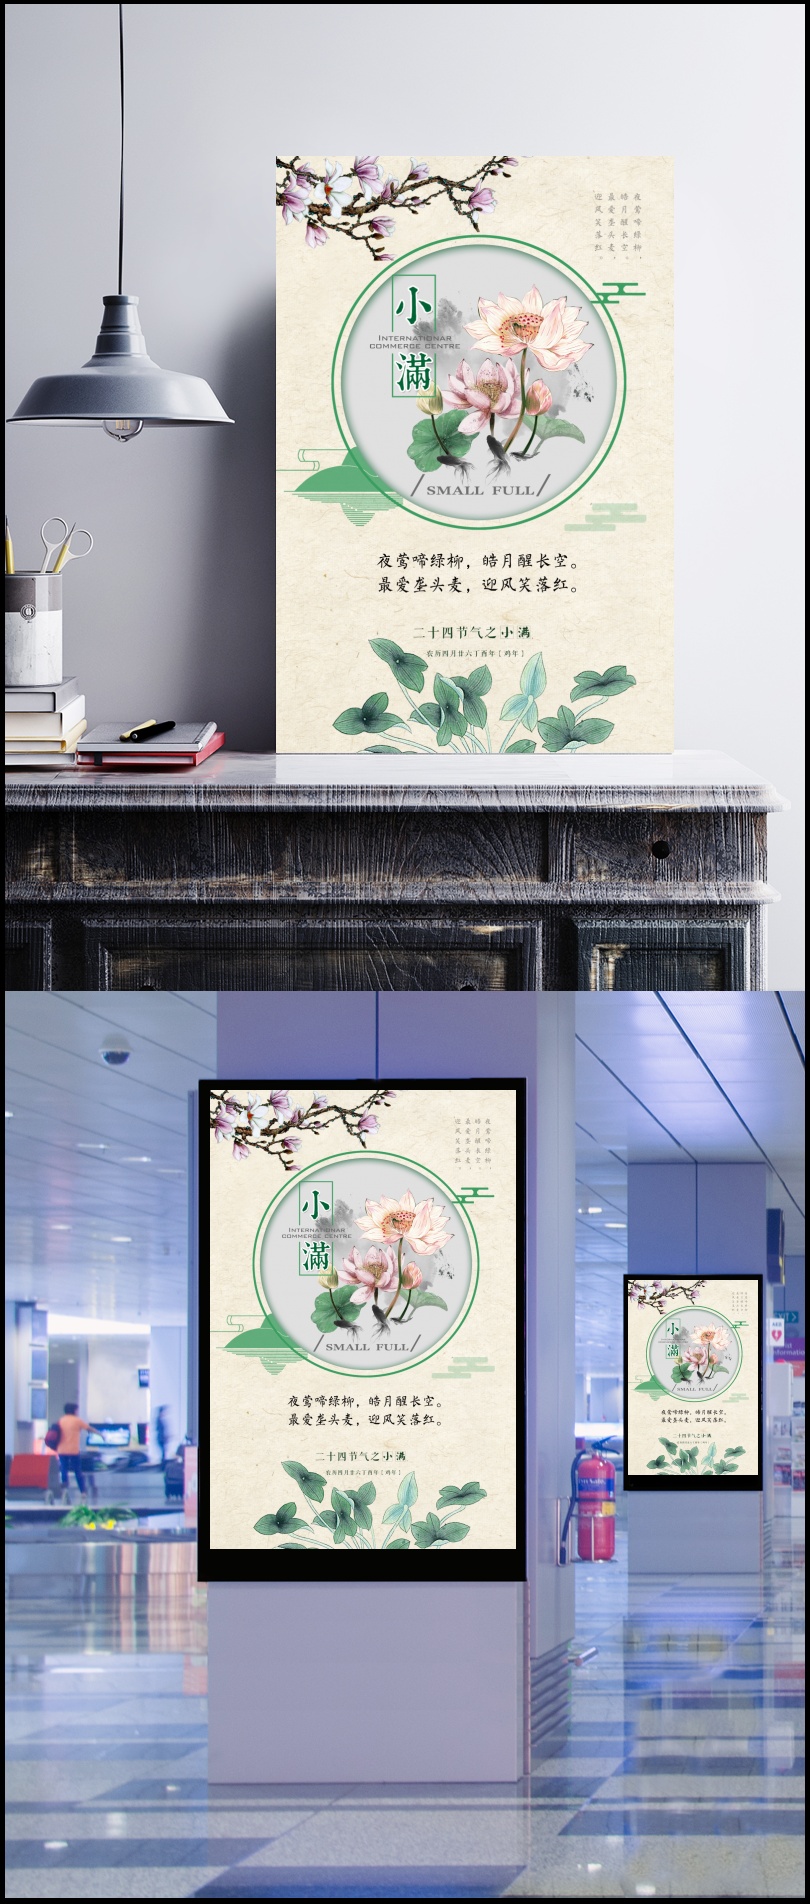 中国风手绘小满24节气海报背景模板